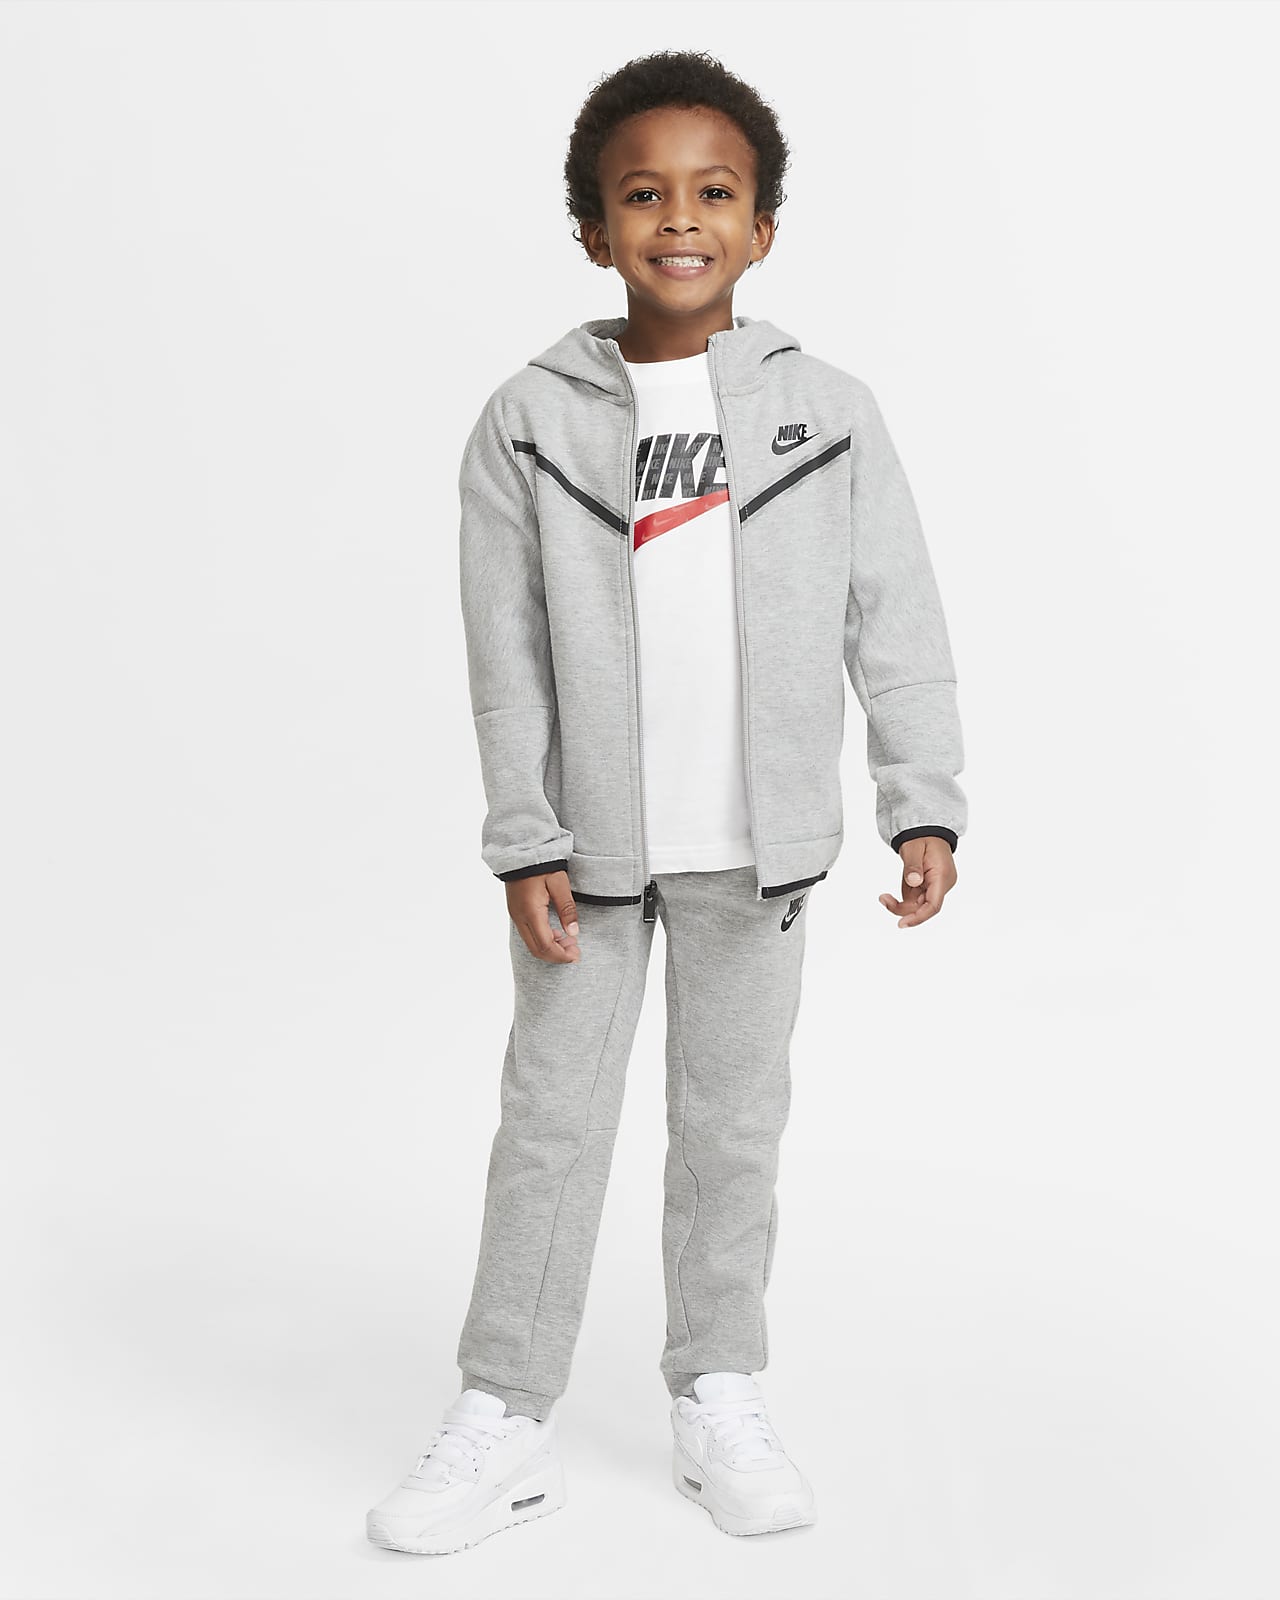 Inwoner oppervlakte bagage Nike Sportswear Tech Fleece Little Kids' Jacket and Pants Set. Nike.com